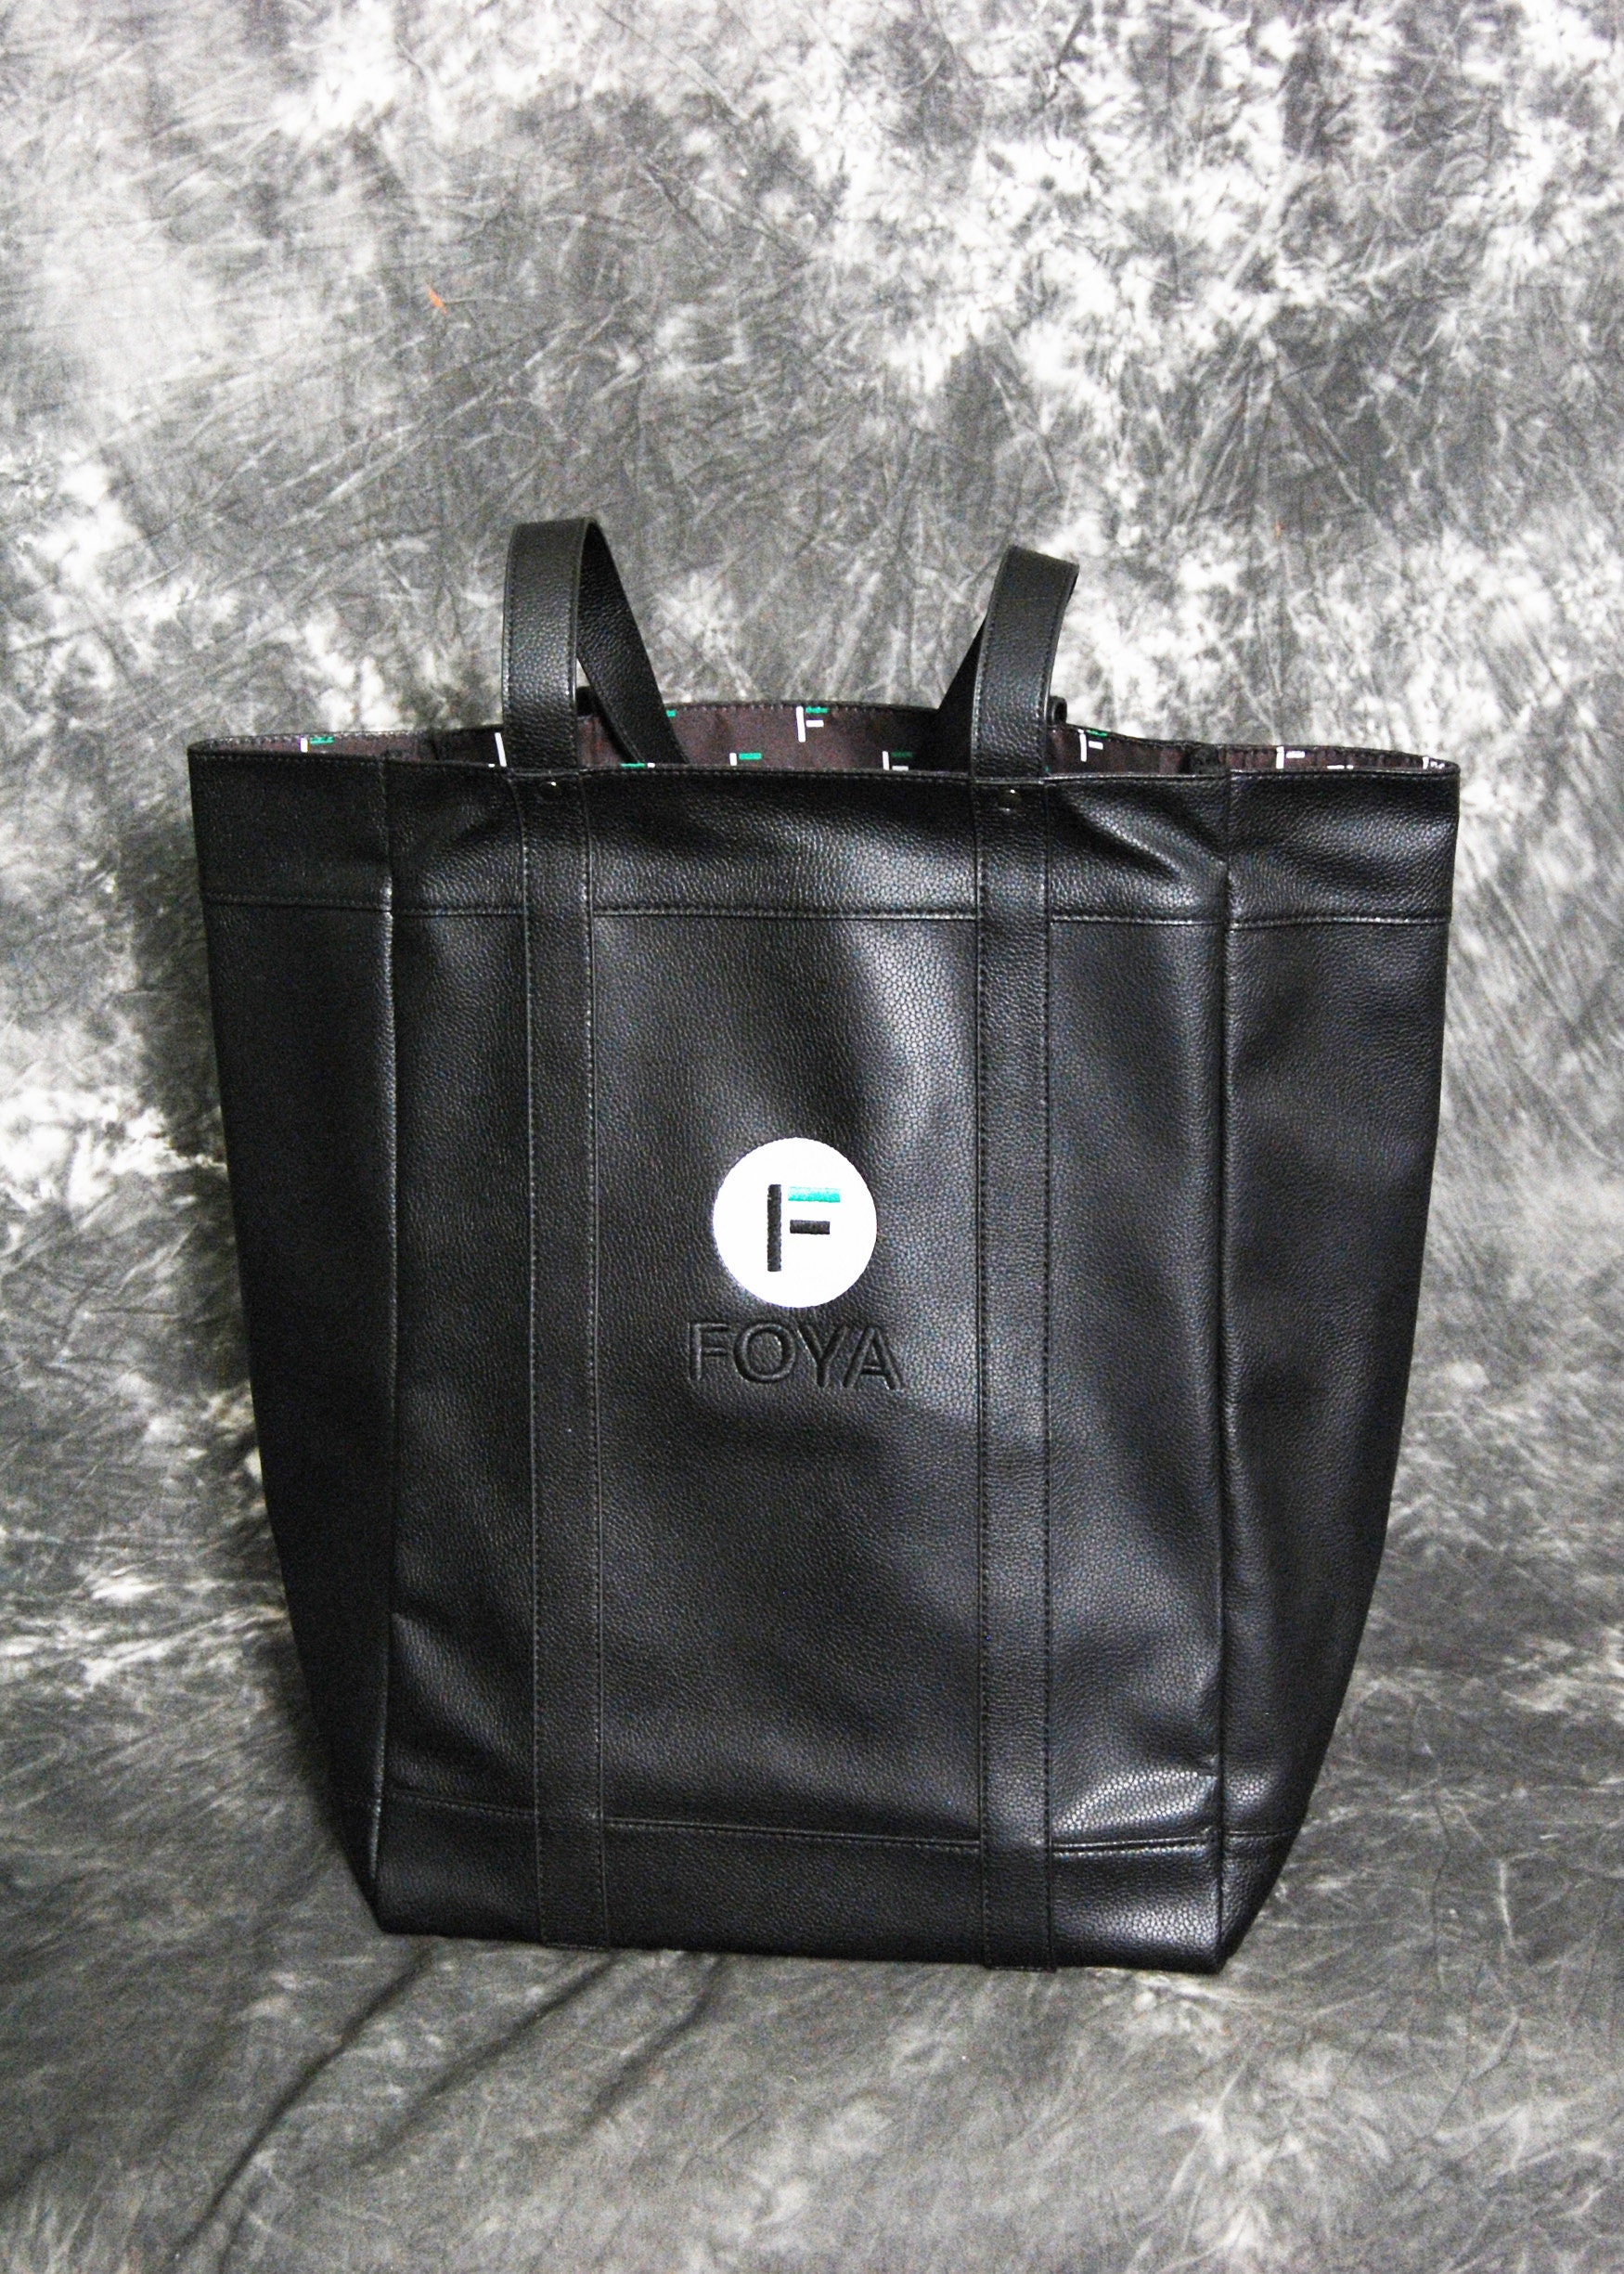 非常に高い品質 CDL Canvas Tote Bag SMALL Black | piglowice.pl